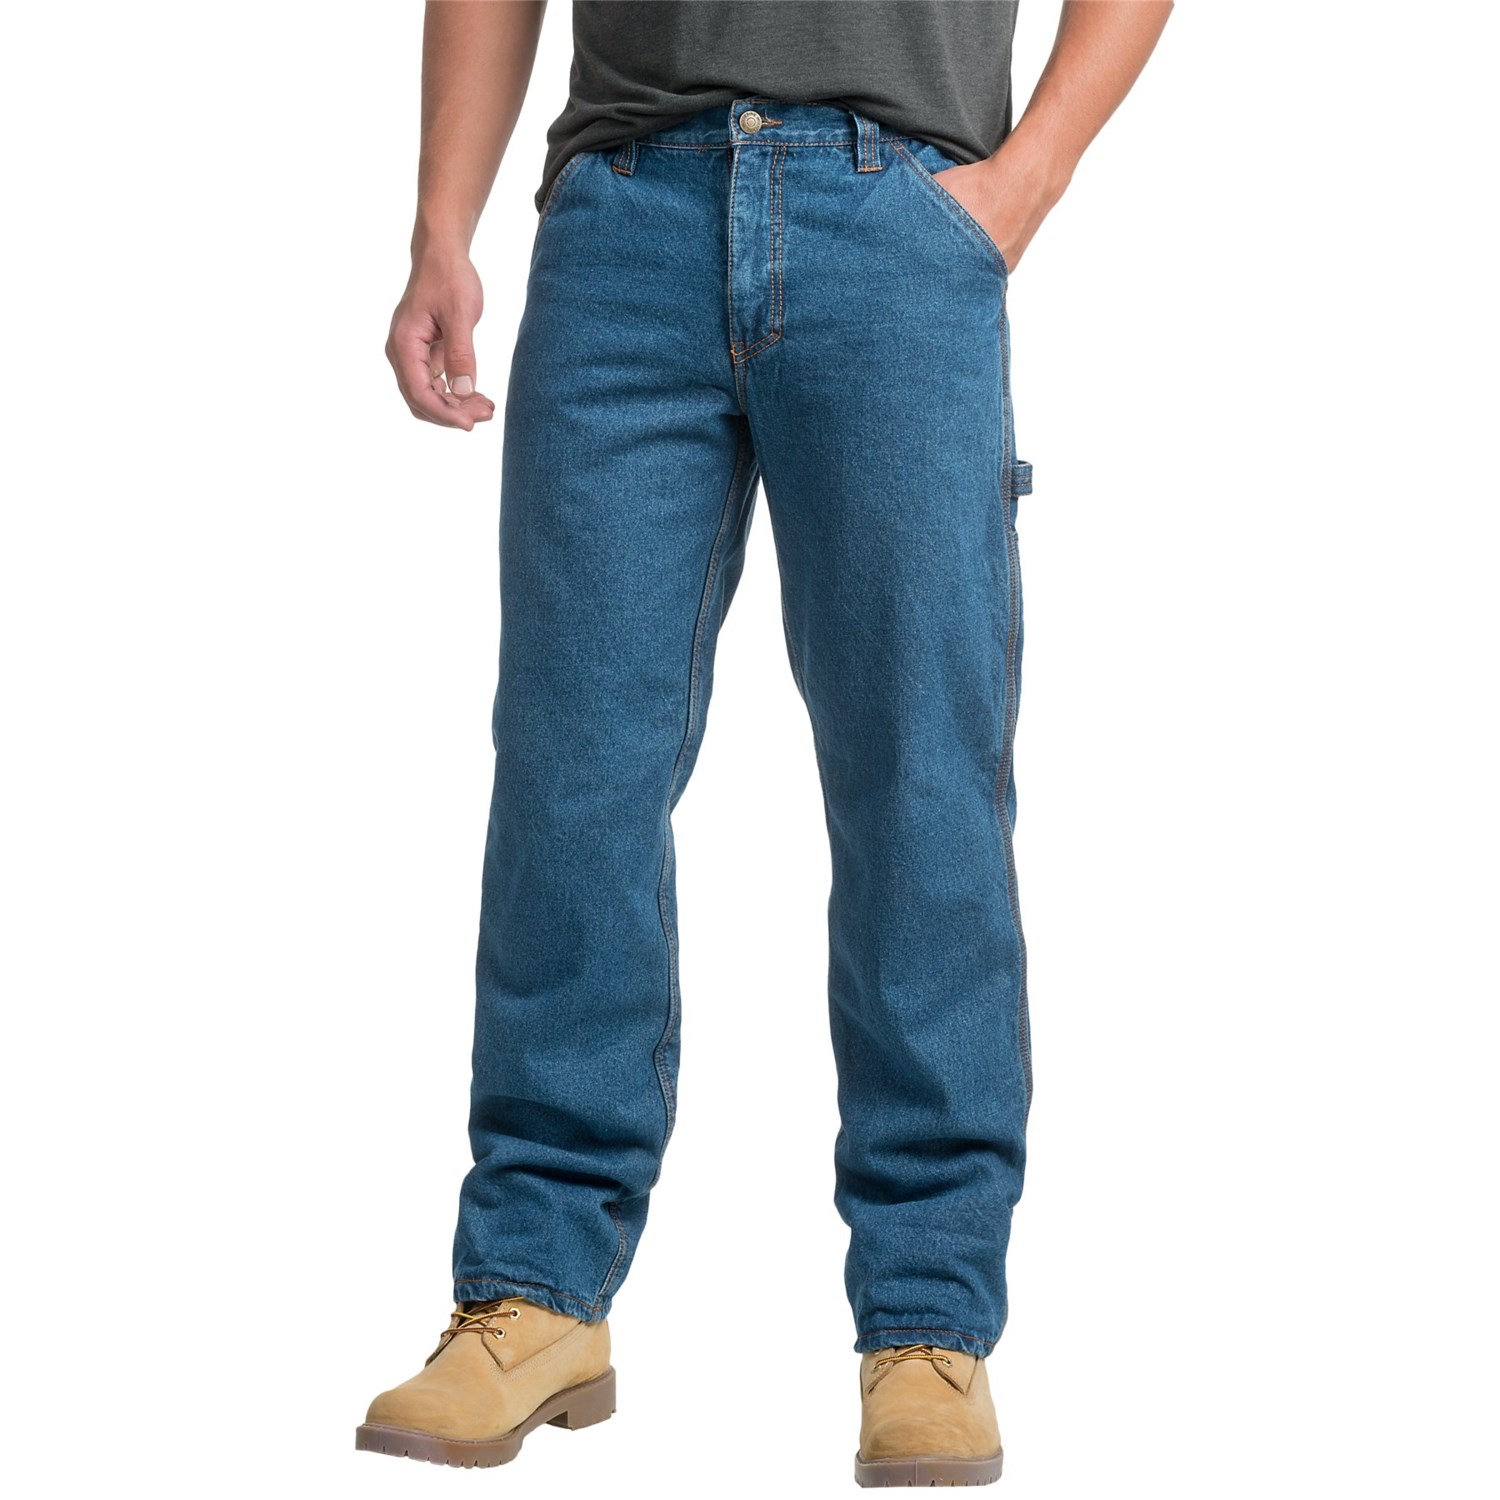 Wolverine Fleece-Lined Carpenter Jeans (For Men) - Save 50%